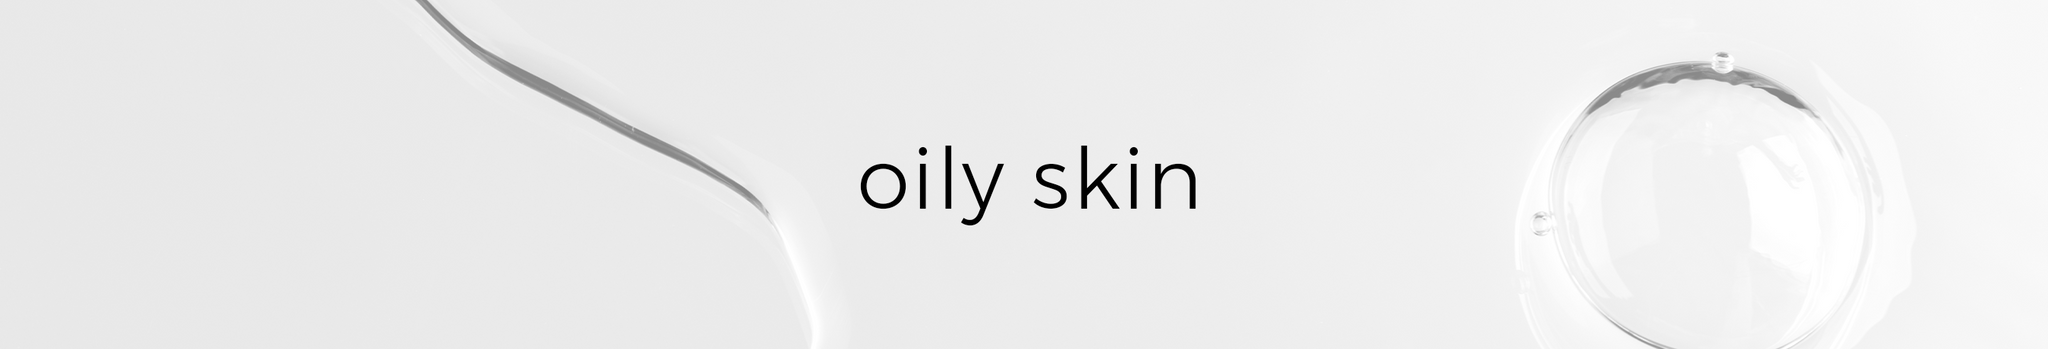 oily_skin